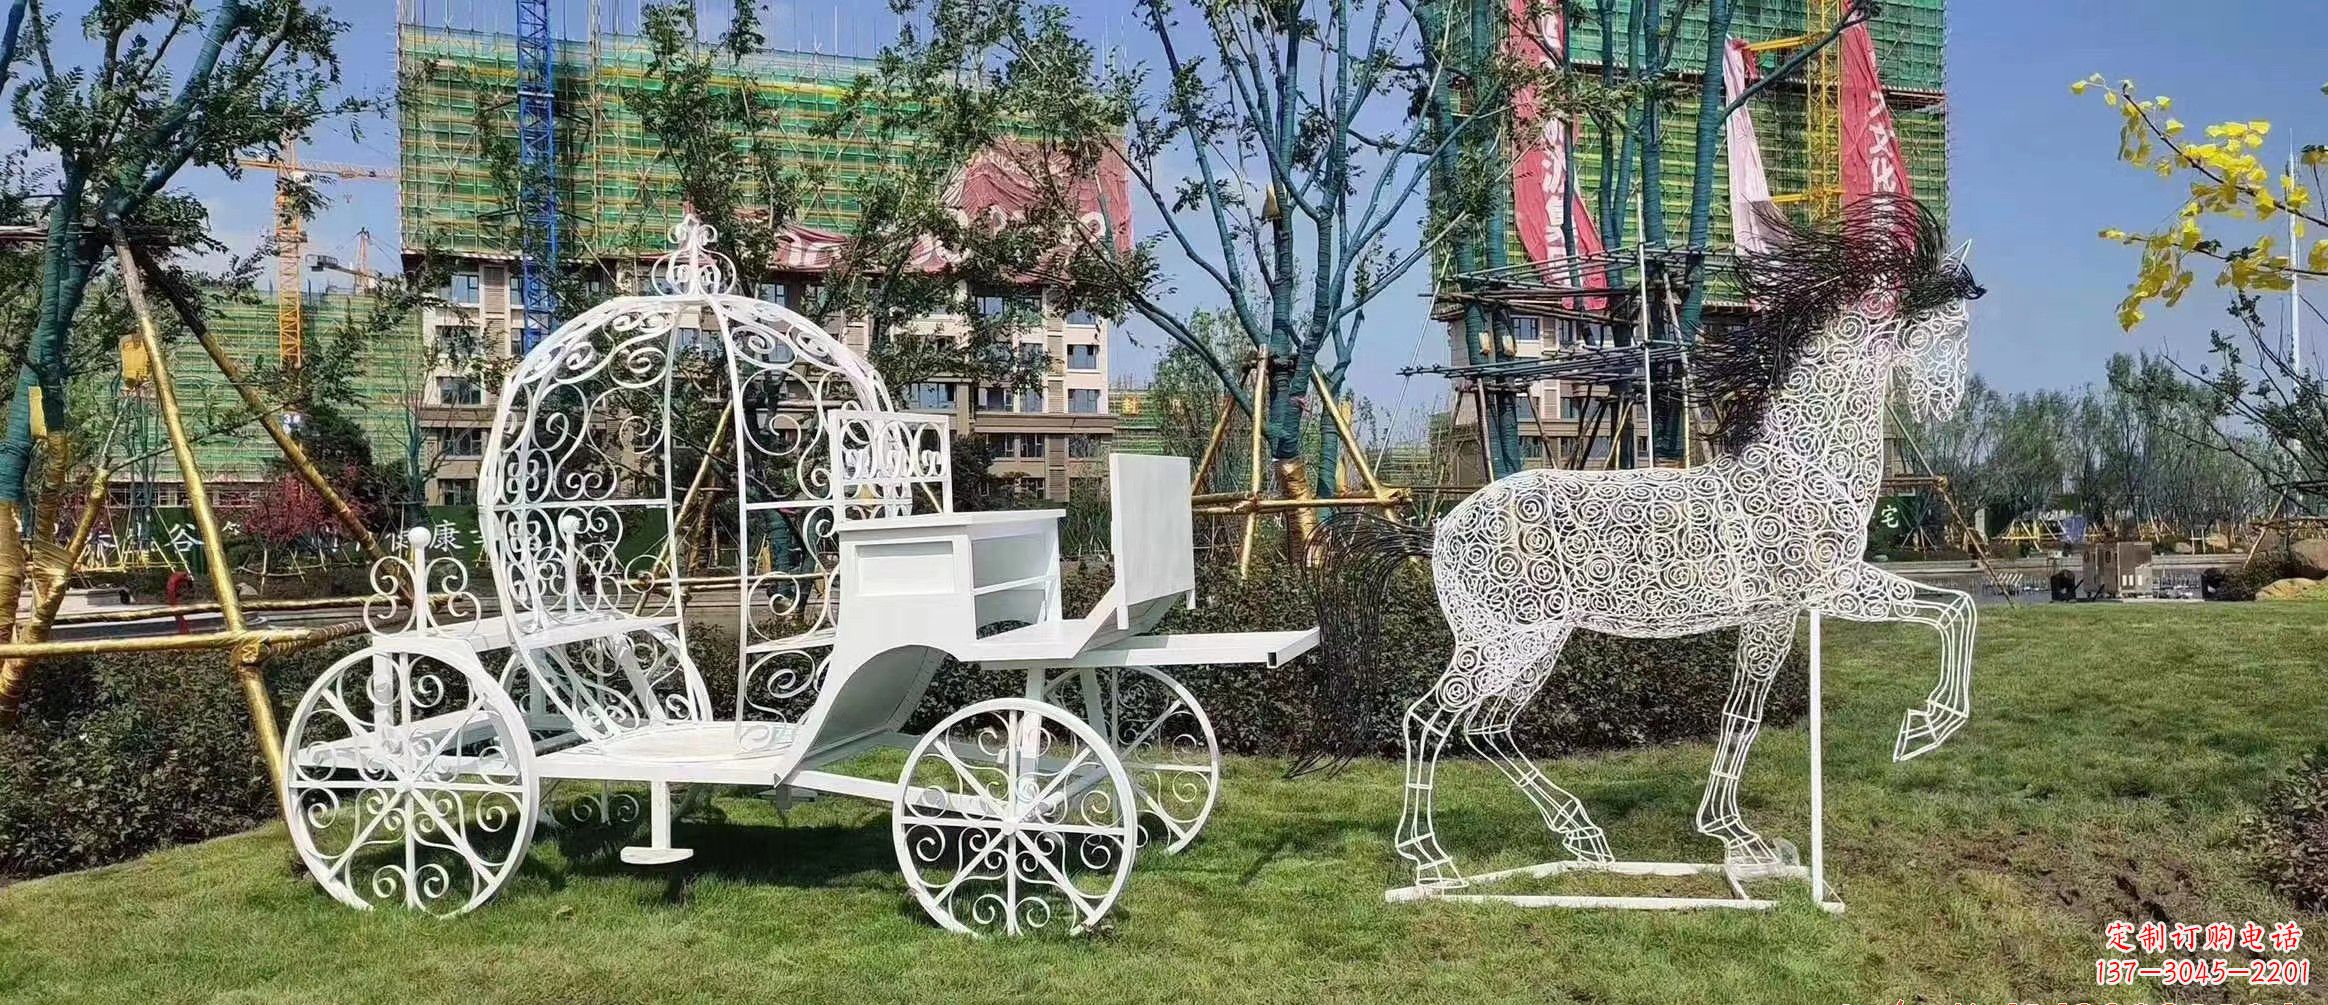 吉林马车雕塑-小区花园广场创意镂空不锈钢马车雕塑